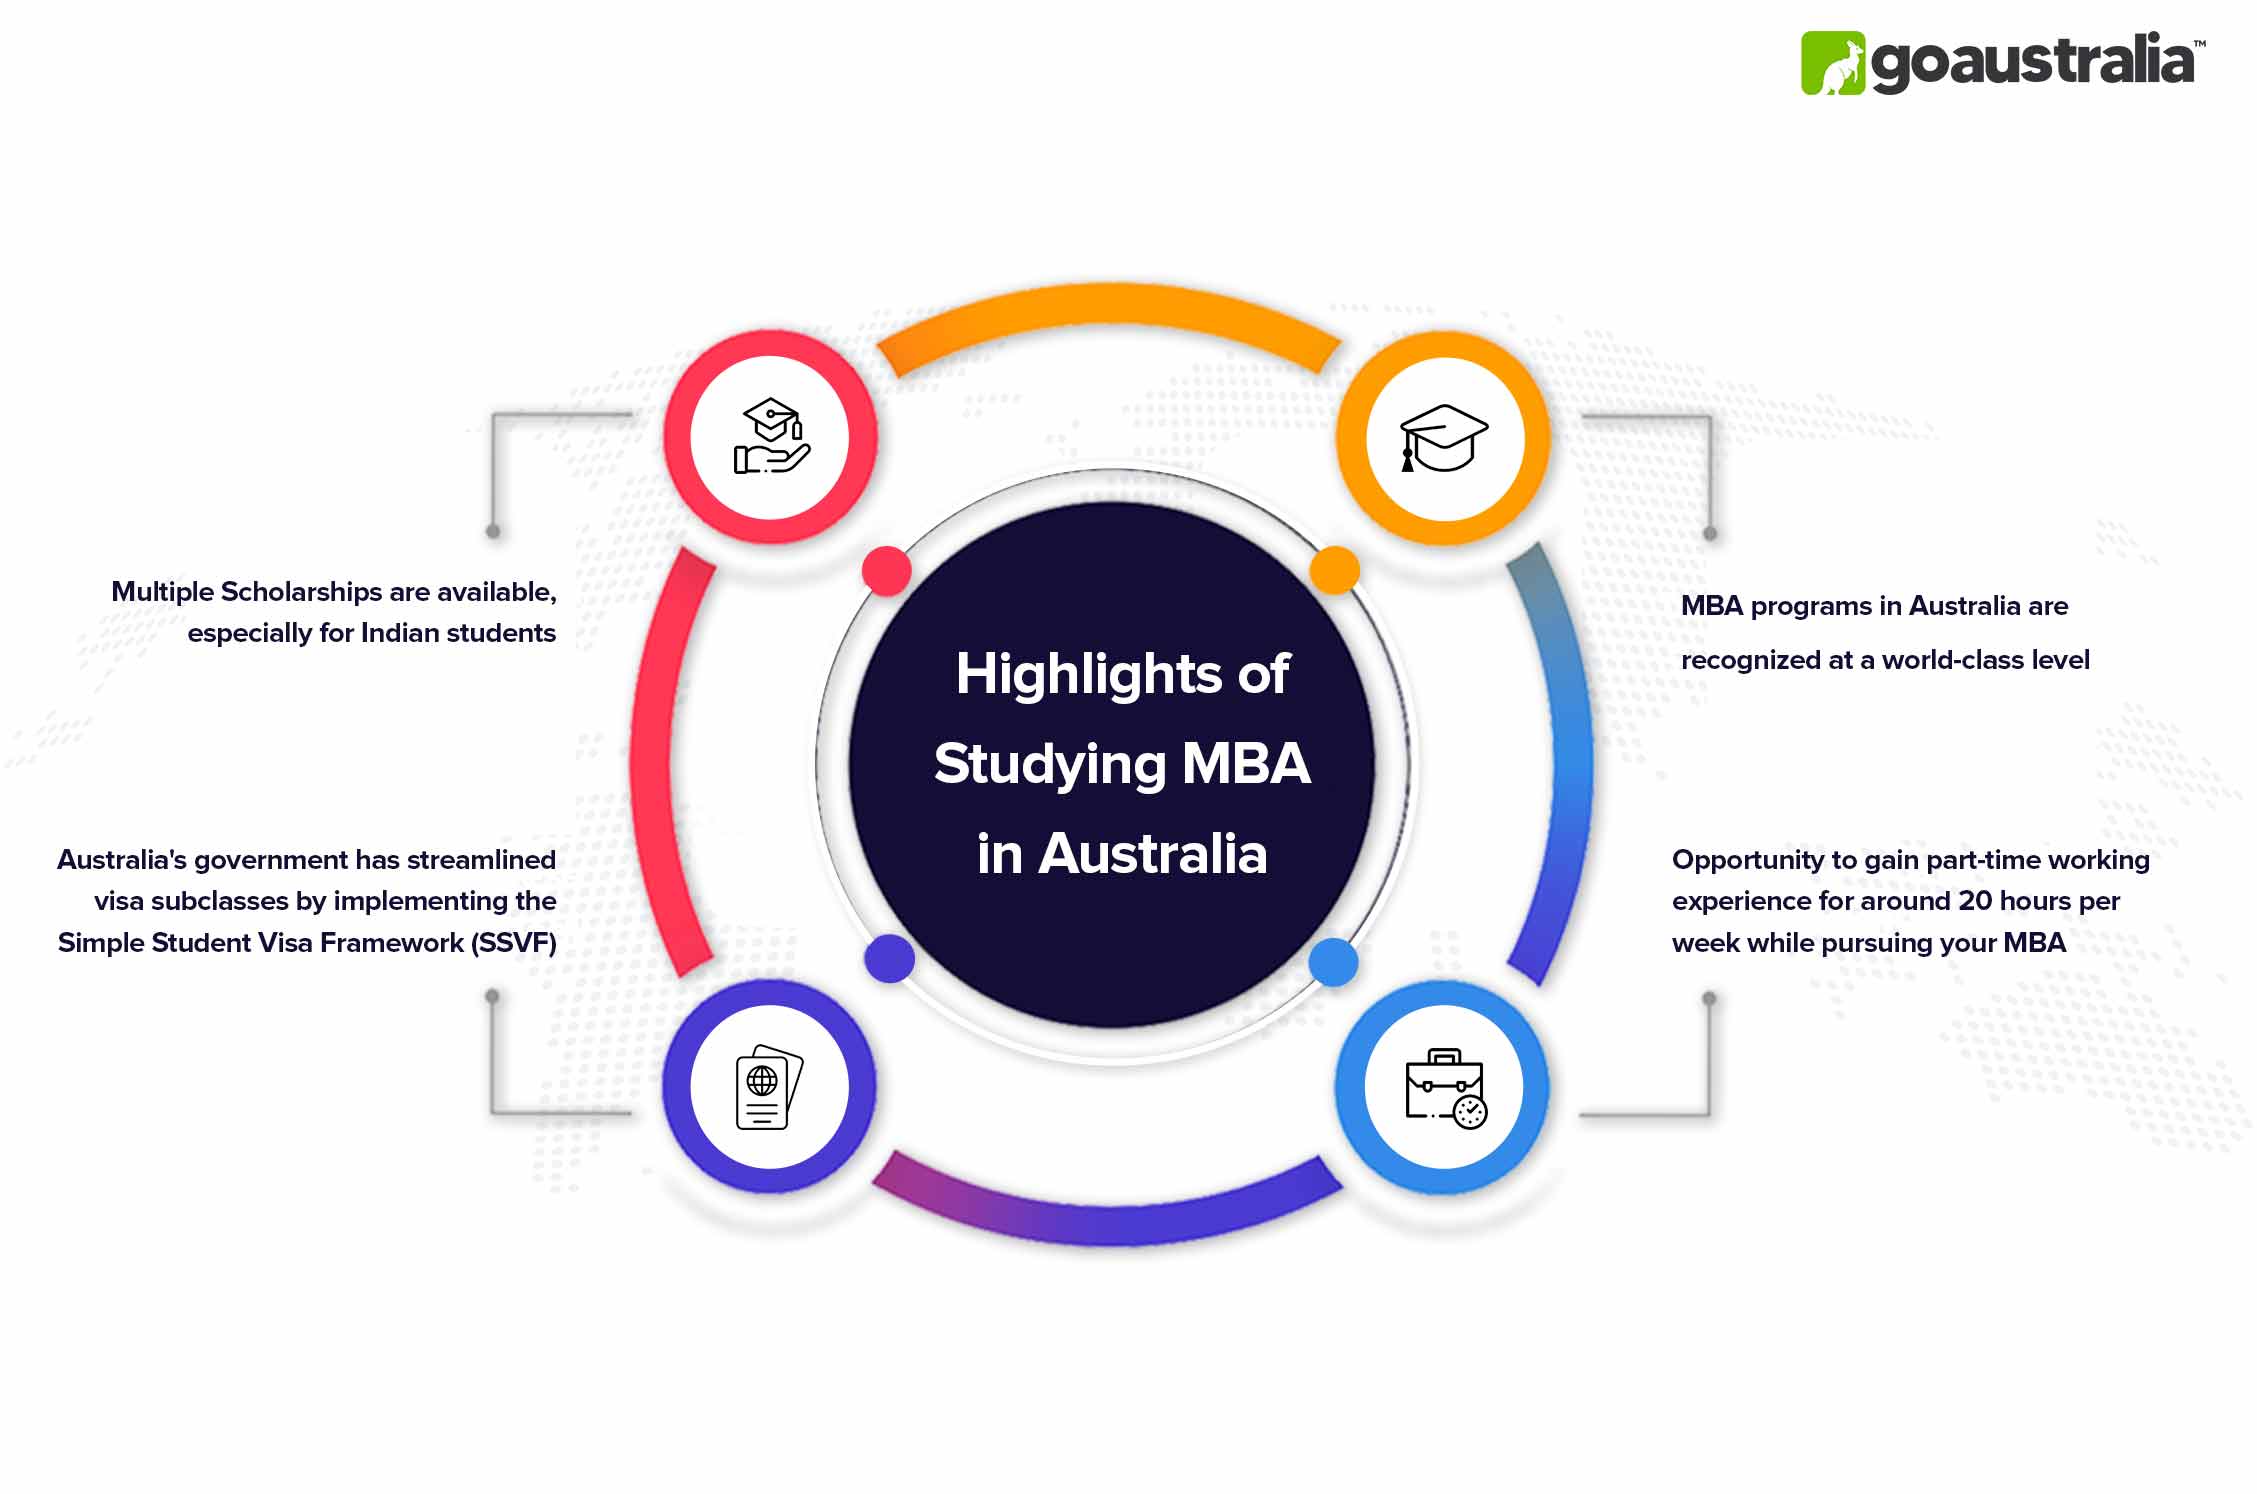 MBA in Australia